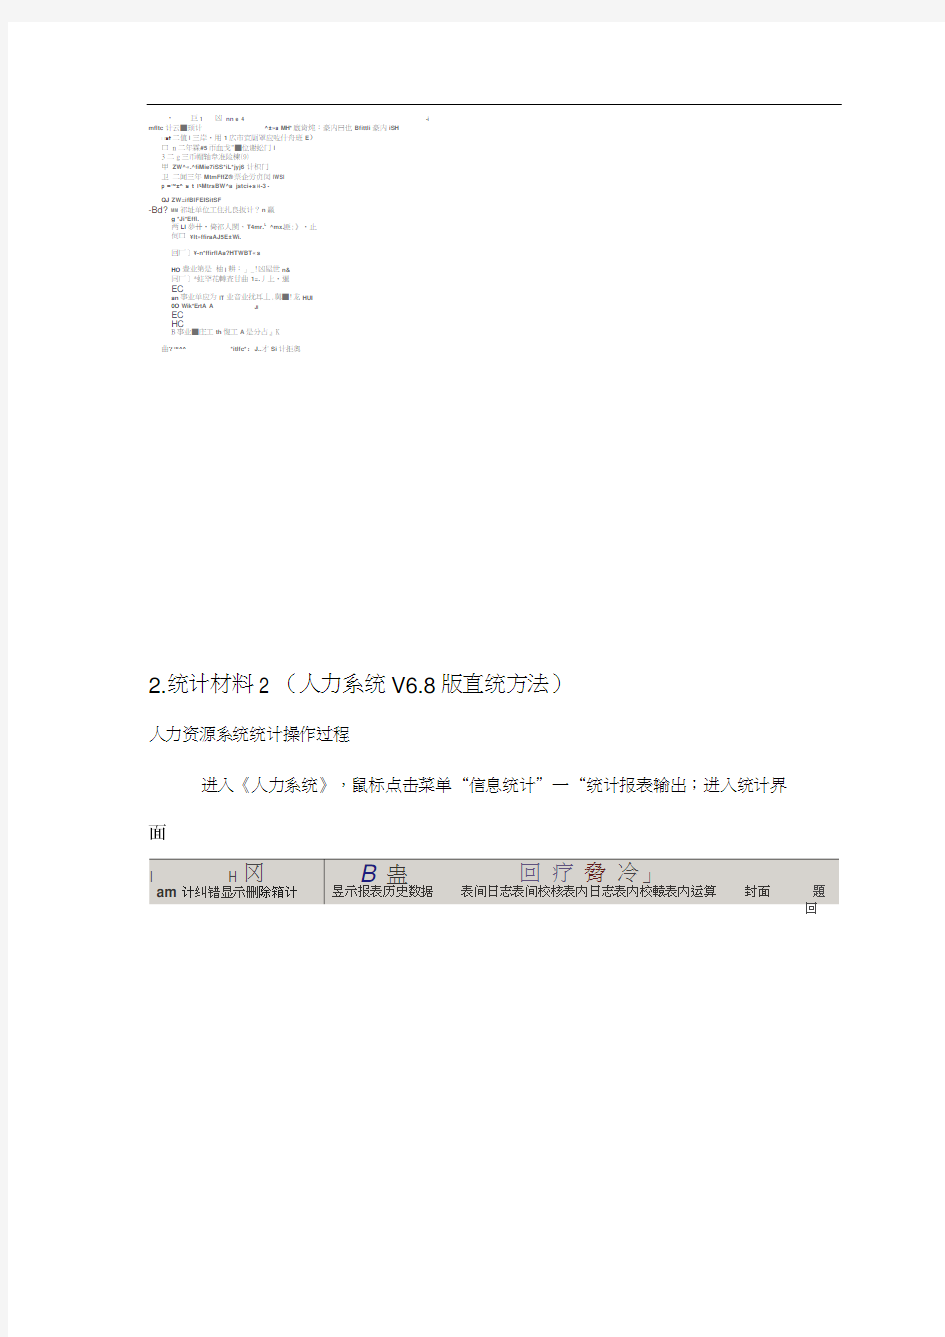 一、《深圳市人力资源管理信息系统v68版》